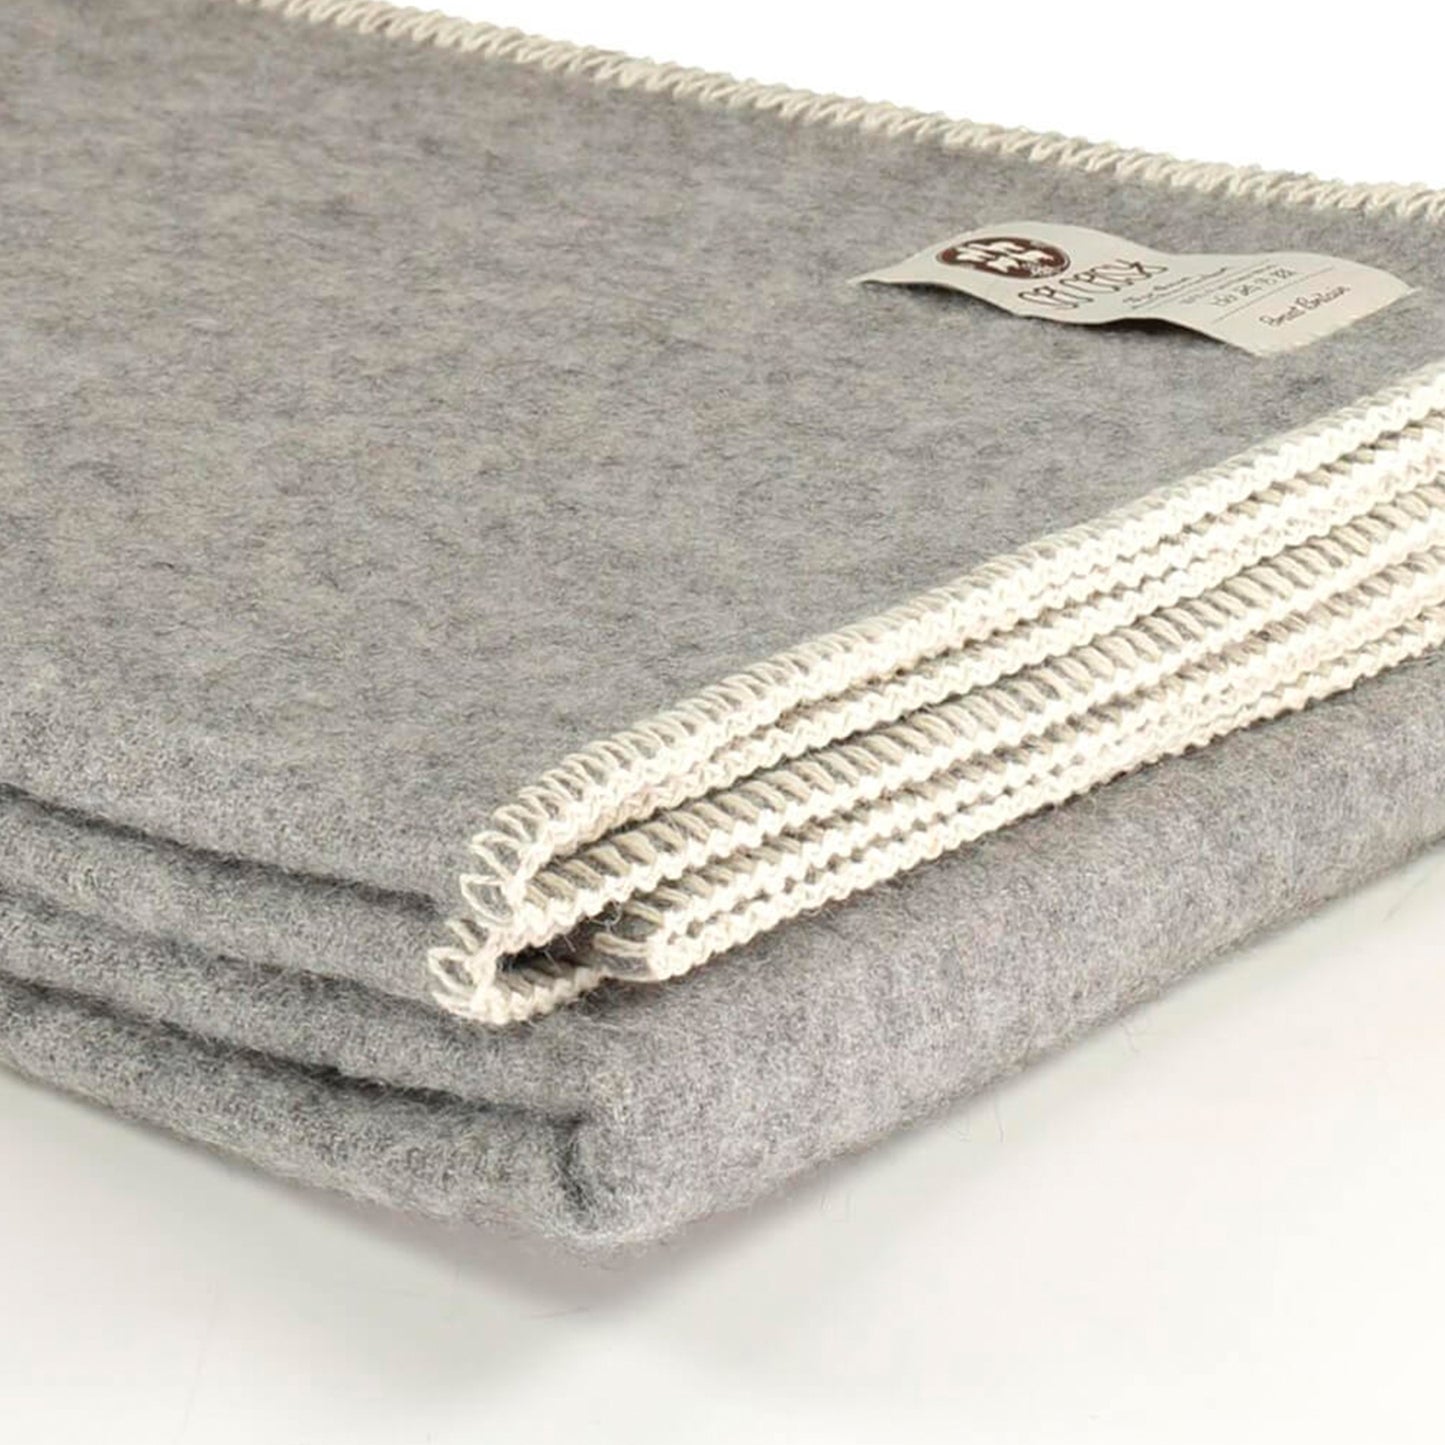 Soft grey undyed wool throw